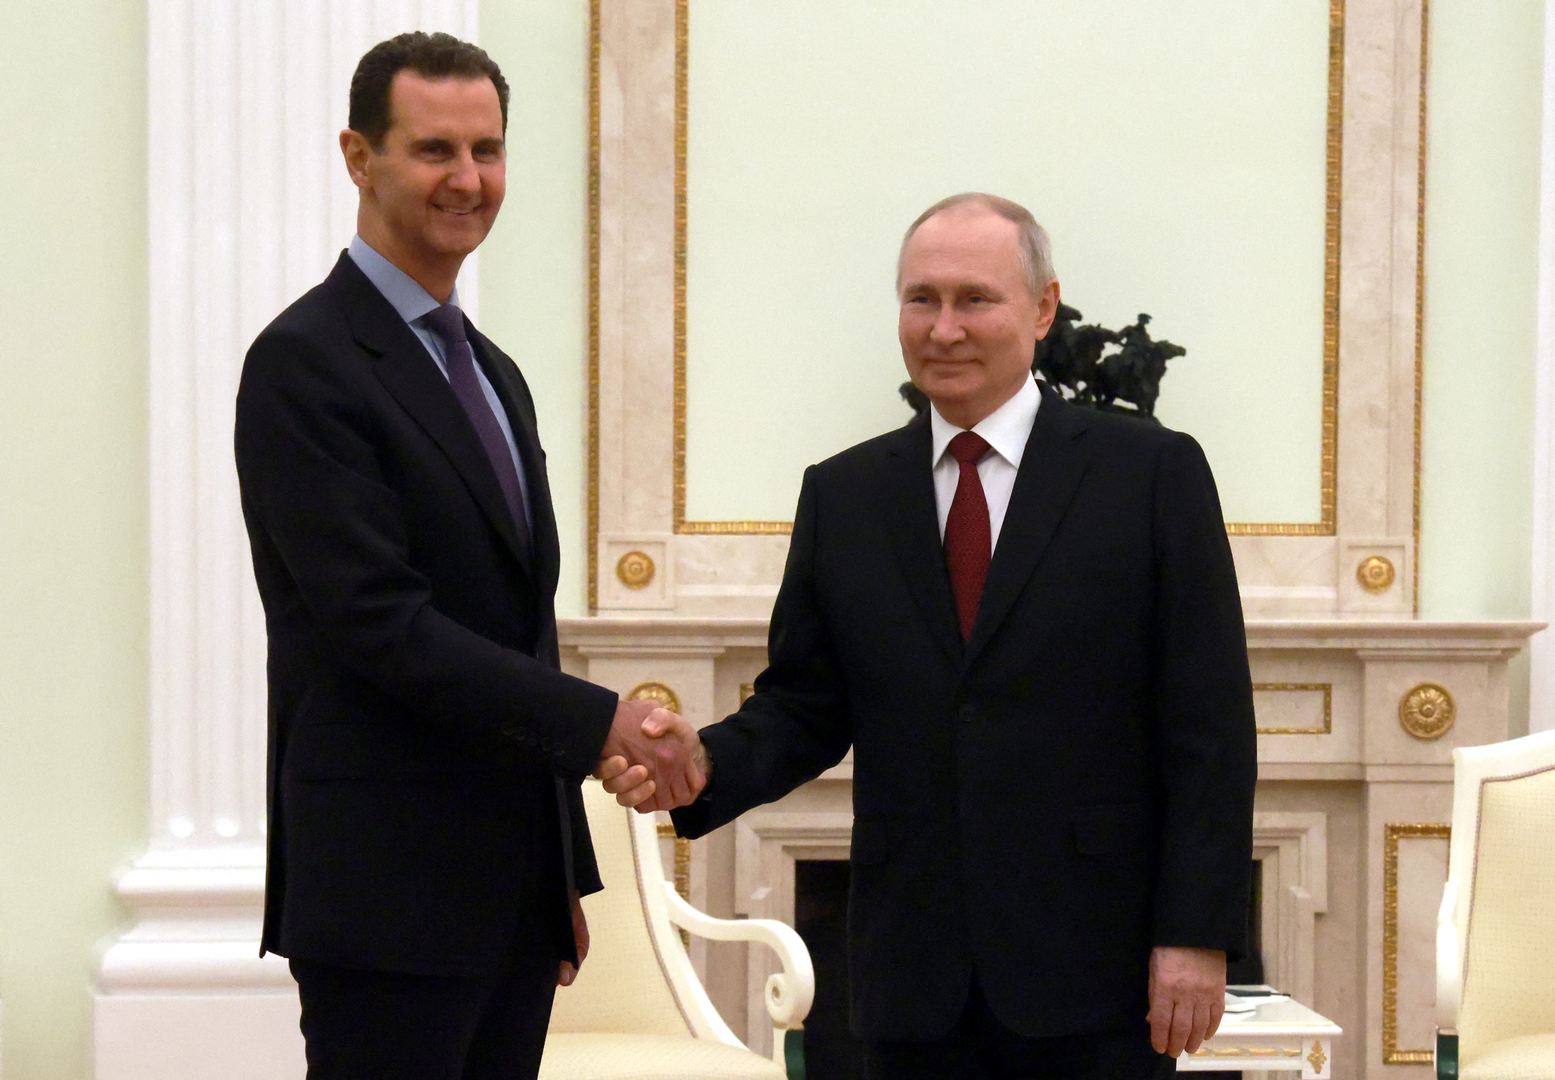 الرئيس الأسد يكشف أسس علاقته بالرئيس بوتين وروسيا ويتحدث عن شيطنة الغرب لروسيا وسوريا